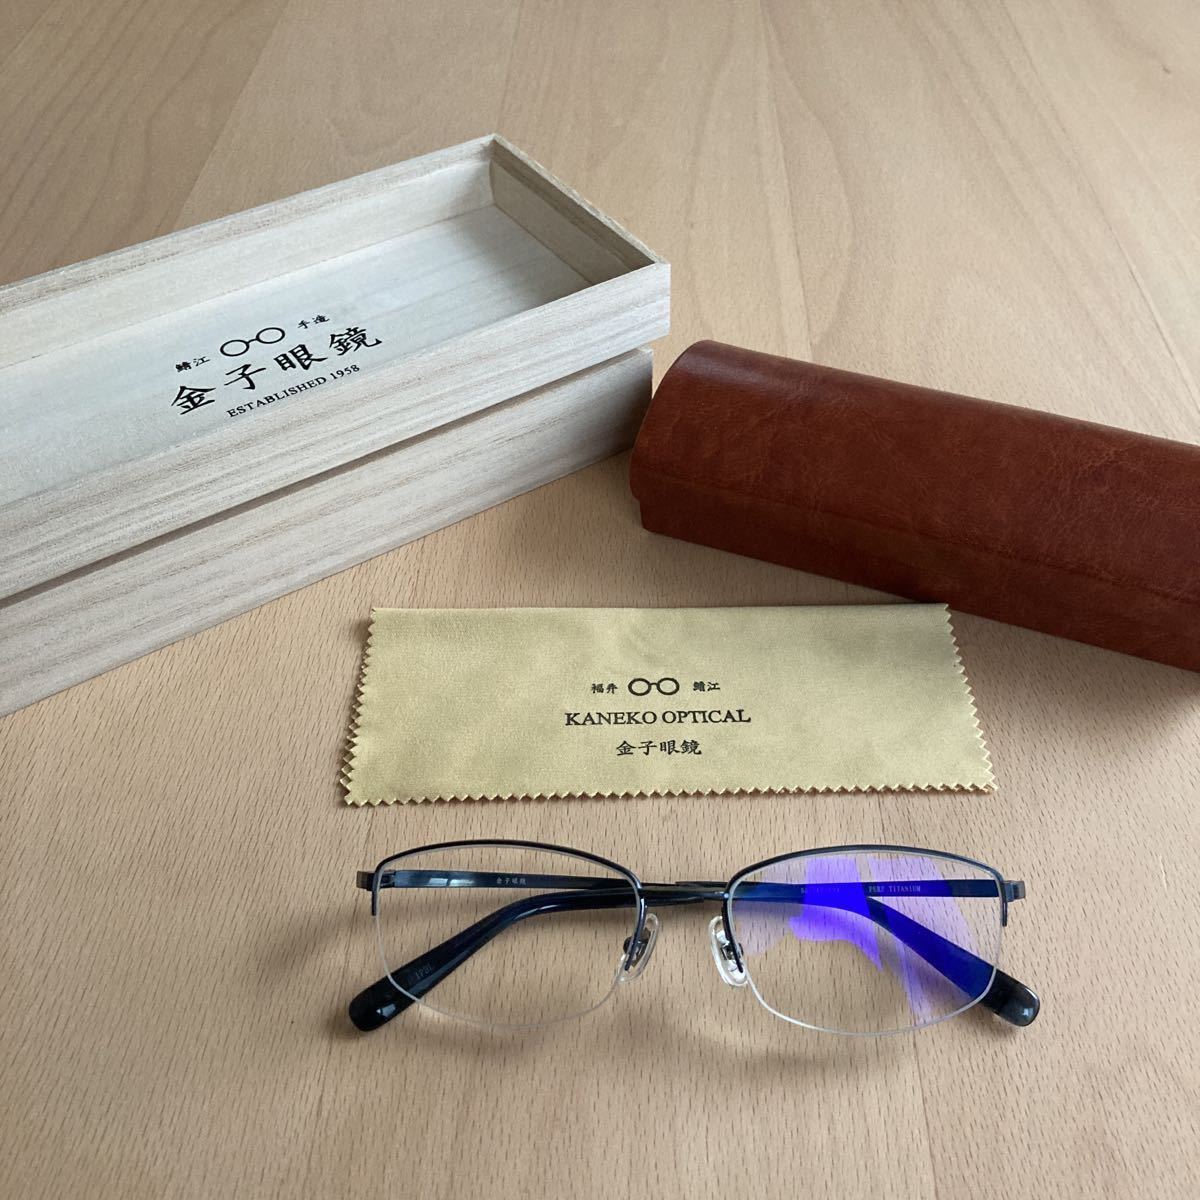 金子眼鏡 KMP-01 IPBL 美品 定価57,200円 プレミアライン オリバーピープルズ ayame eyevan 白山眼鏡 MADE IN JAPAN